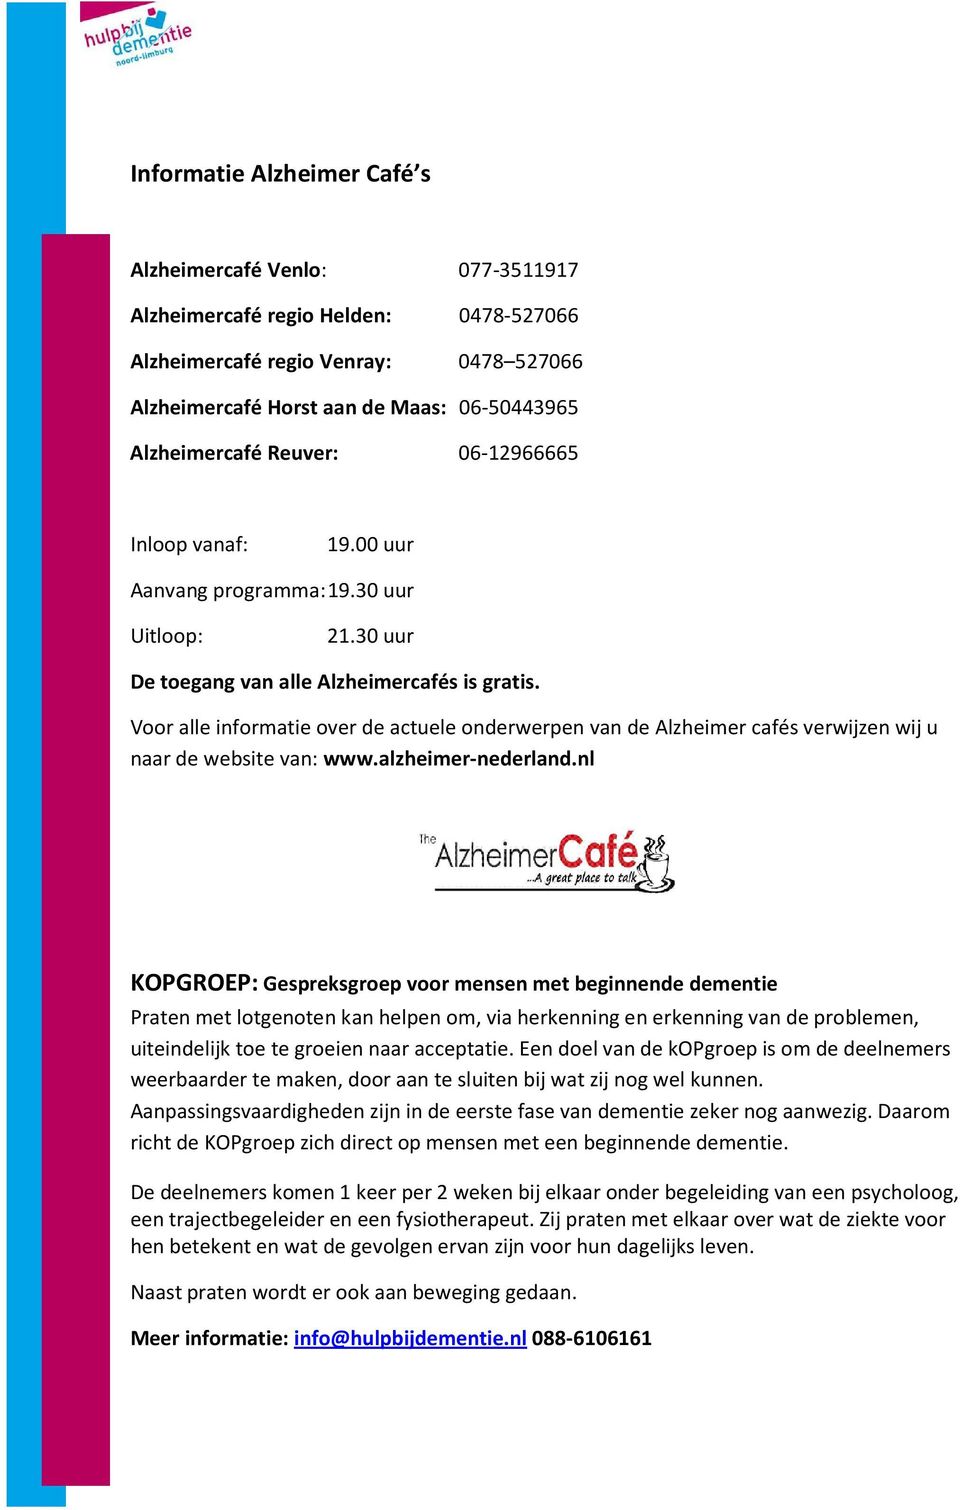 Voor alle informatie over de actuele onderwerpen van de Alzheimer cafés verwijzen wij u naar de website van: www.alzheimer-nederland.